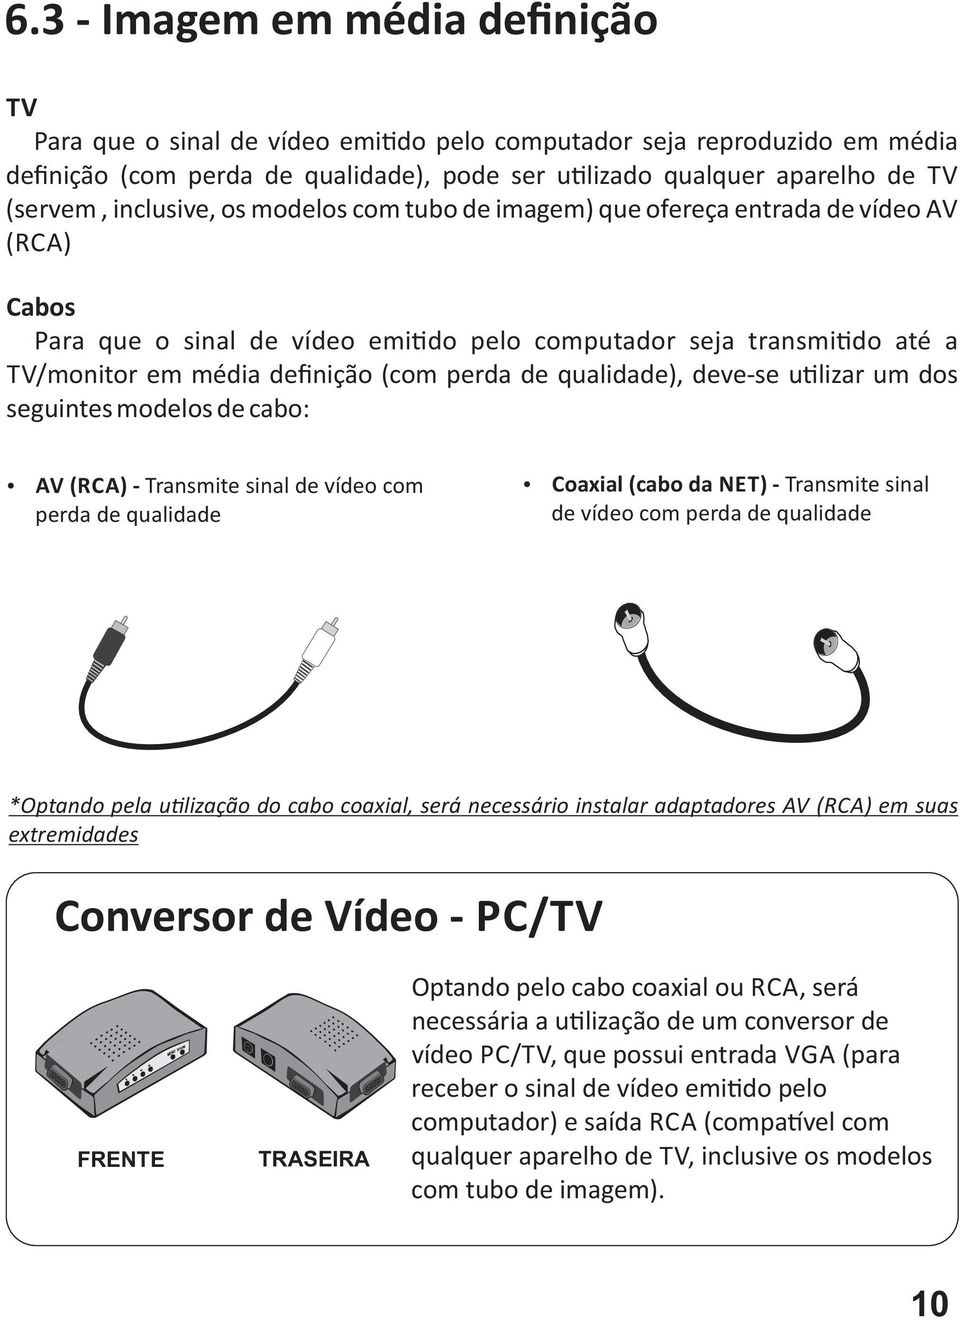 de qualidade), deve se u lizar um dos seguintes modelos de cabo: AV (RCA) Transmite sinal de vídeo com perda de qualidade Coaxial (cabo da NET) Transmite sinal de vídeo com perda de qualidade